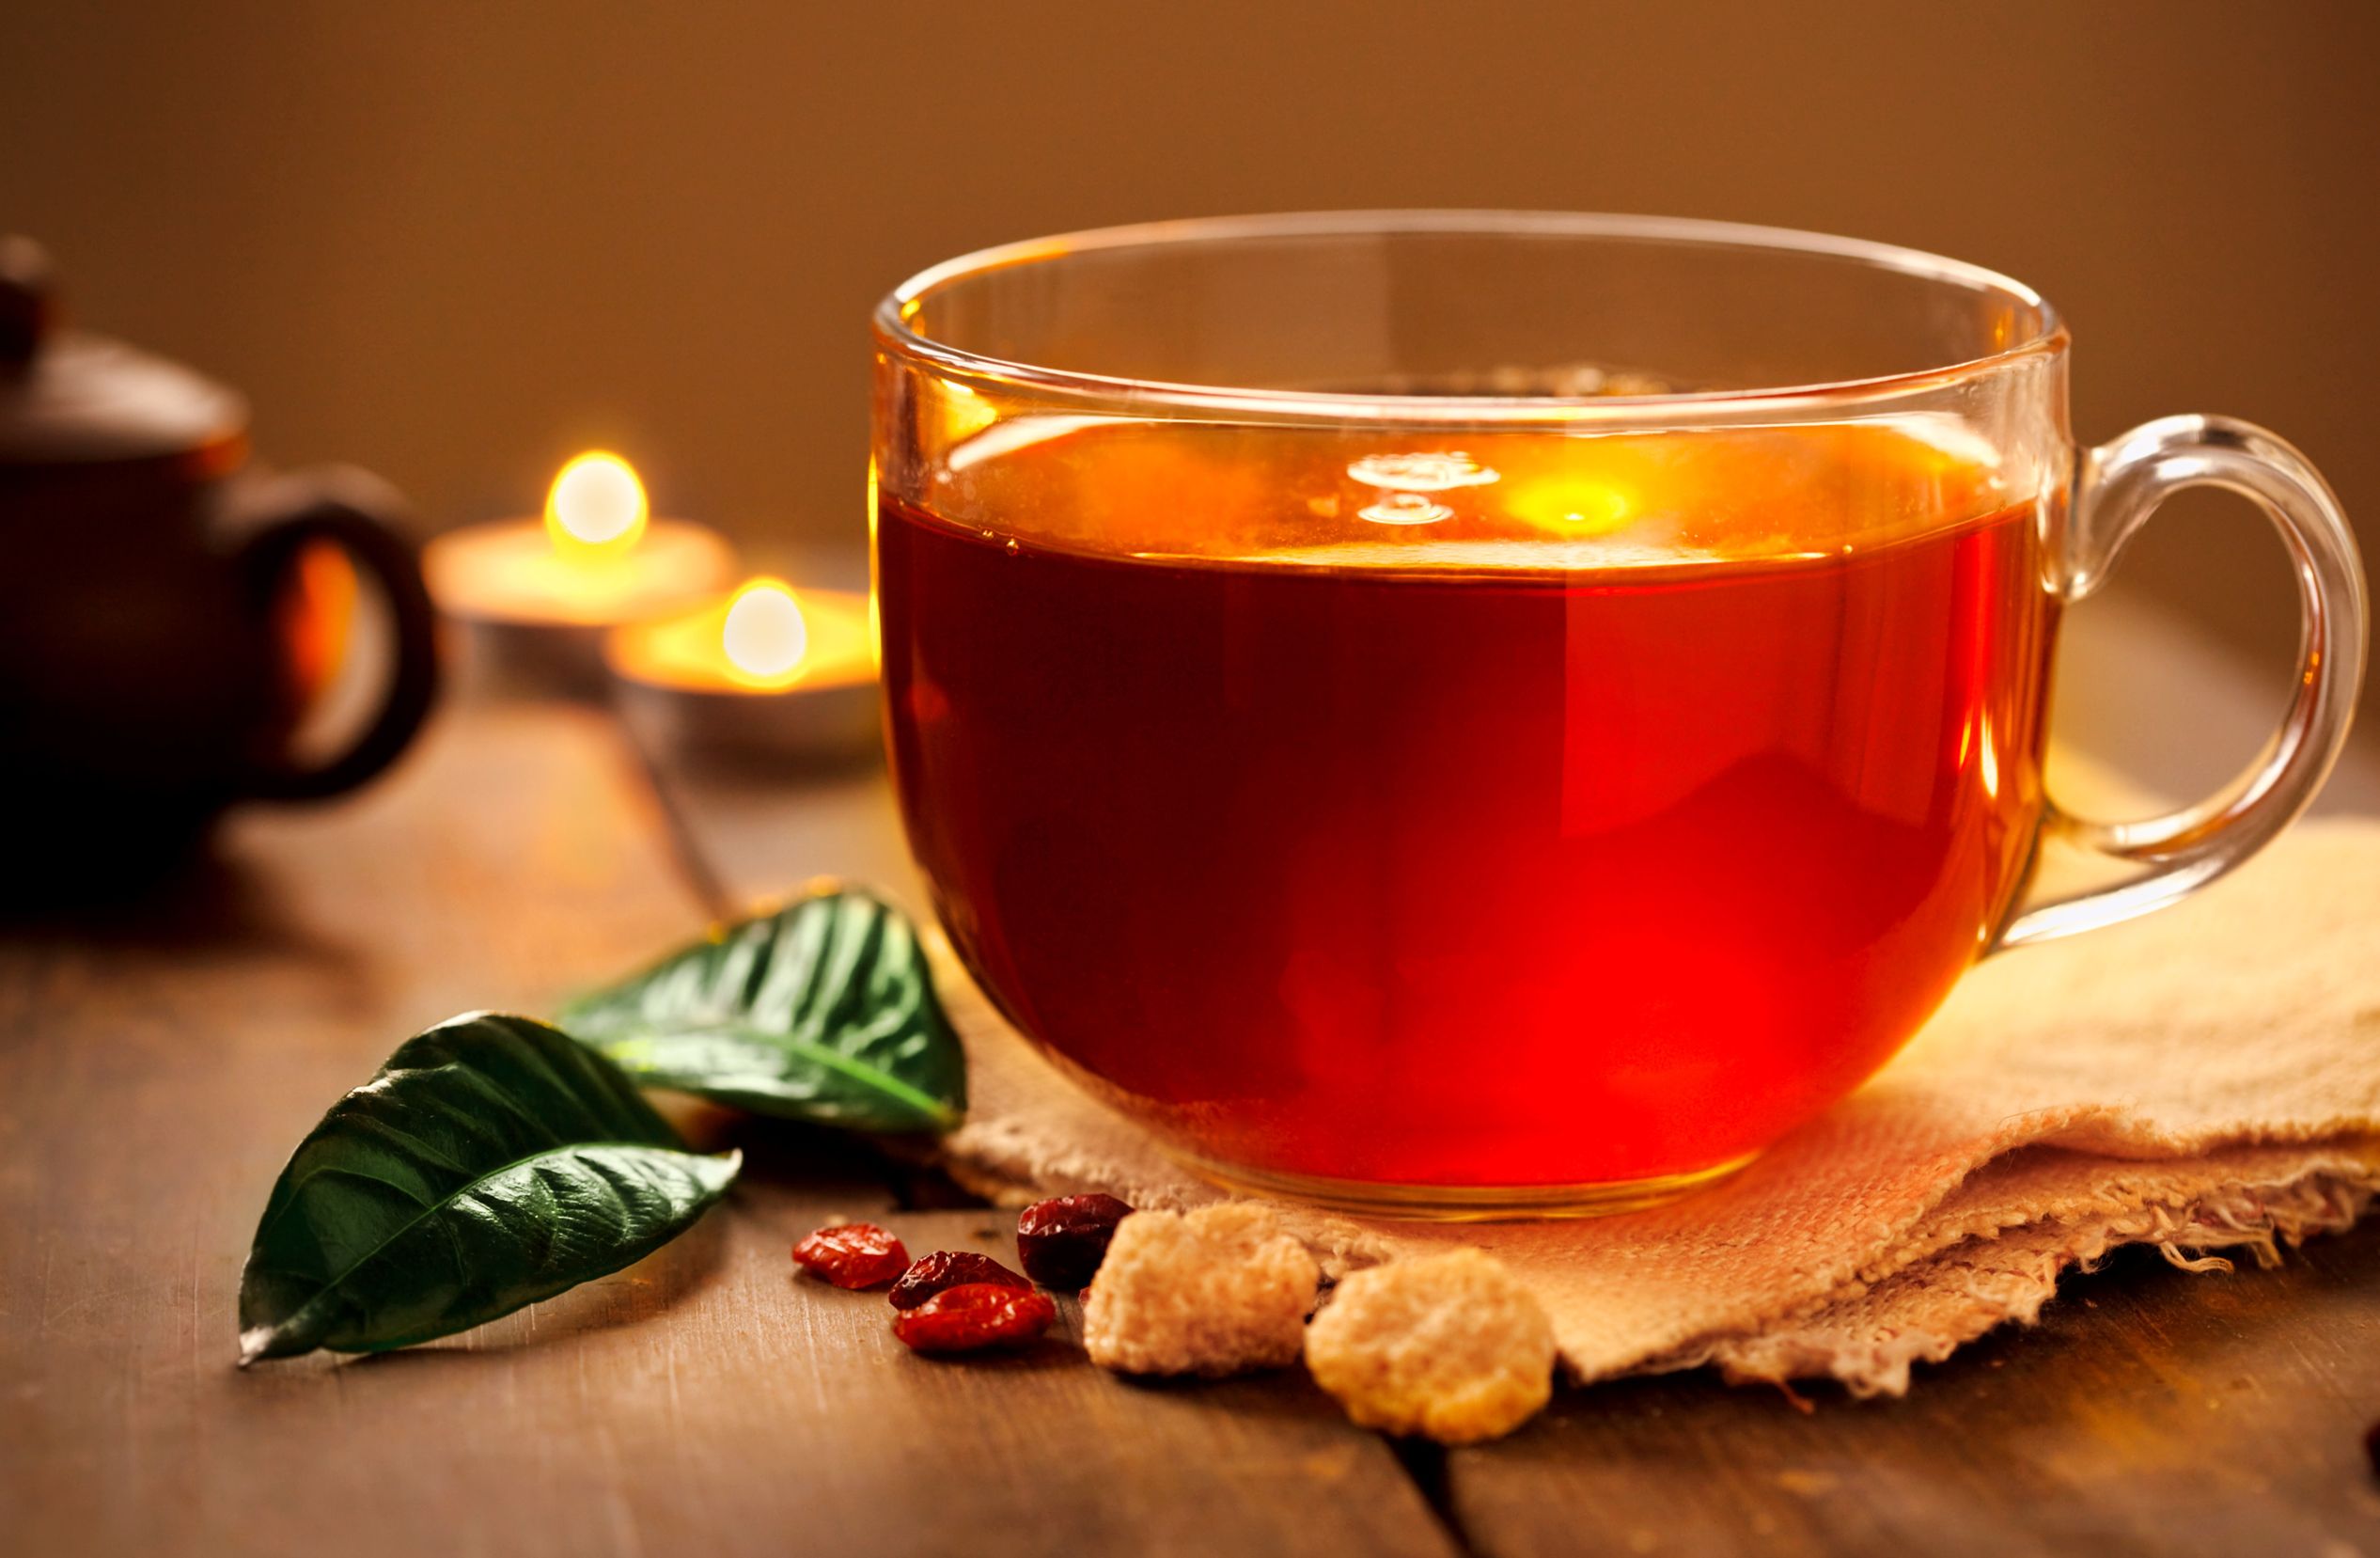 هل الإقبال على شرب الشاي يمكن أن يؤدي إلى جسم رشيق؟